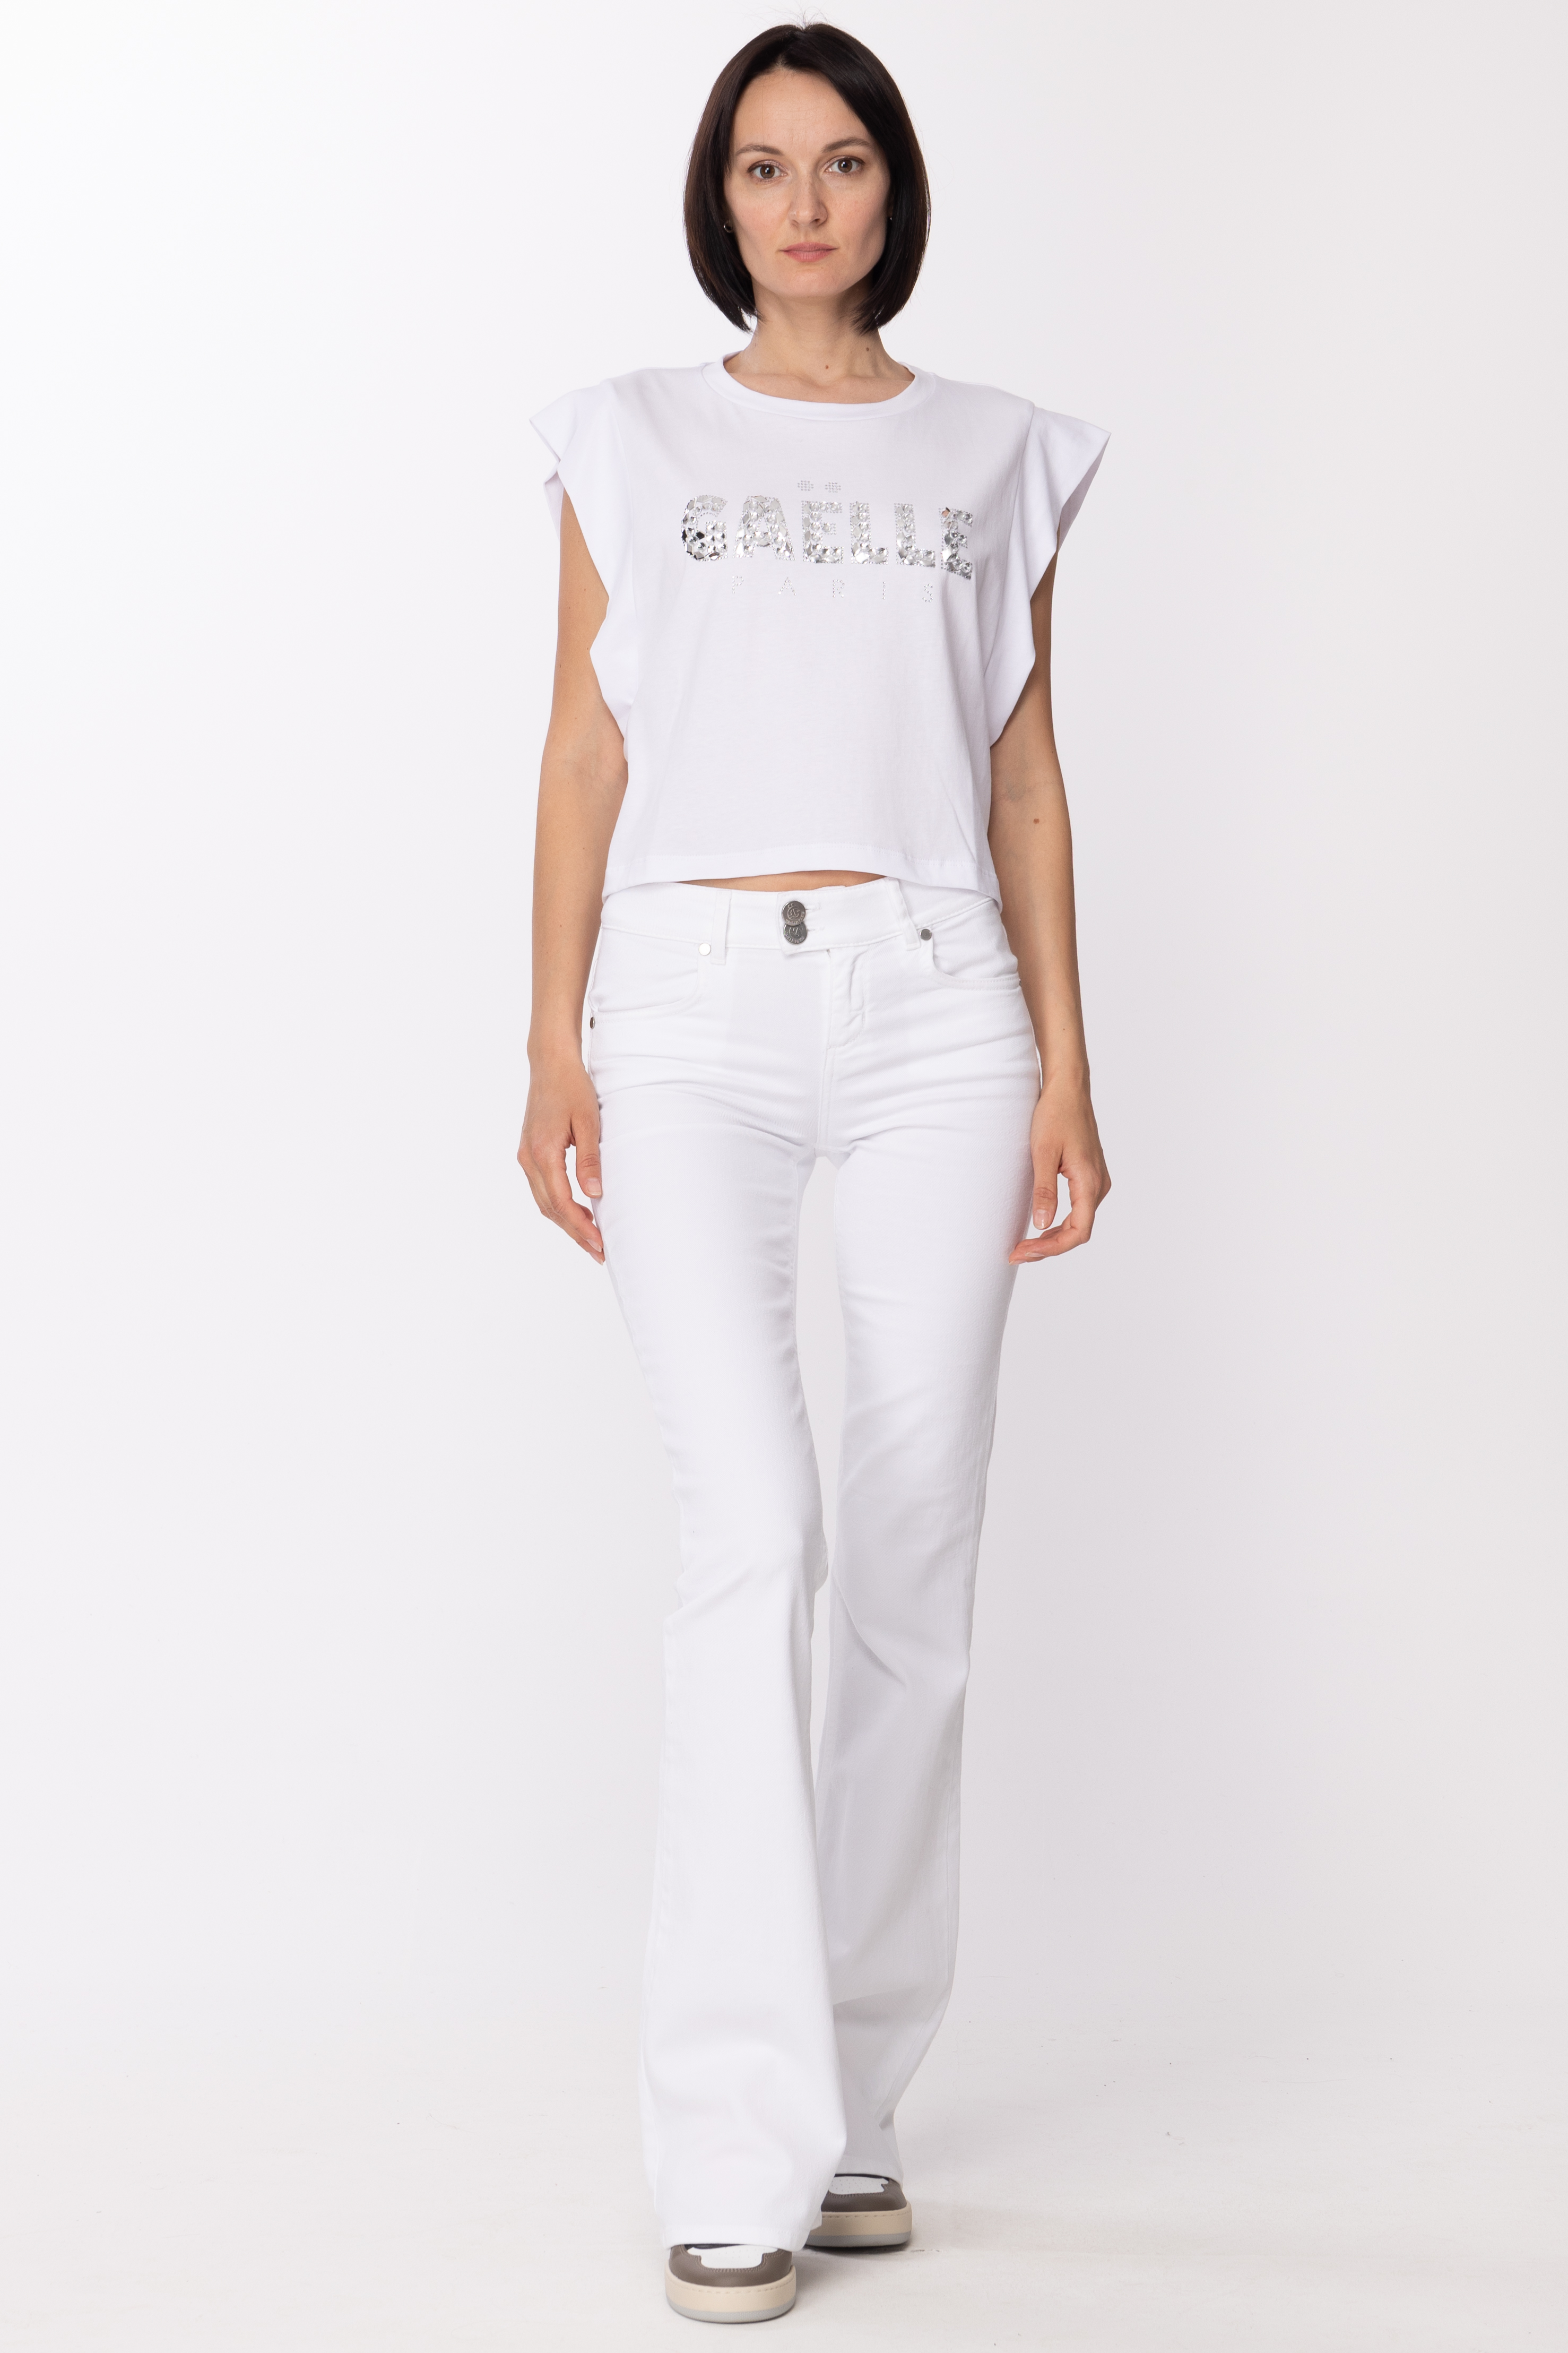 Preview: Gaelle Paris Tshirt with rhinestone logo Bianco